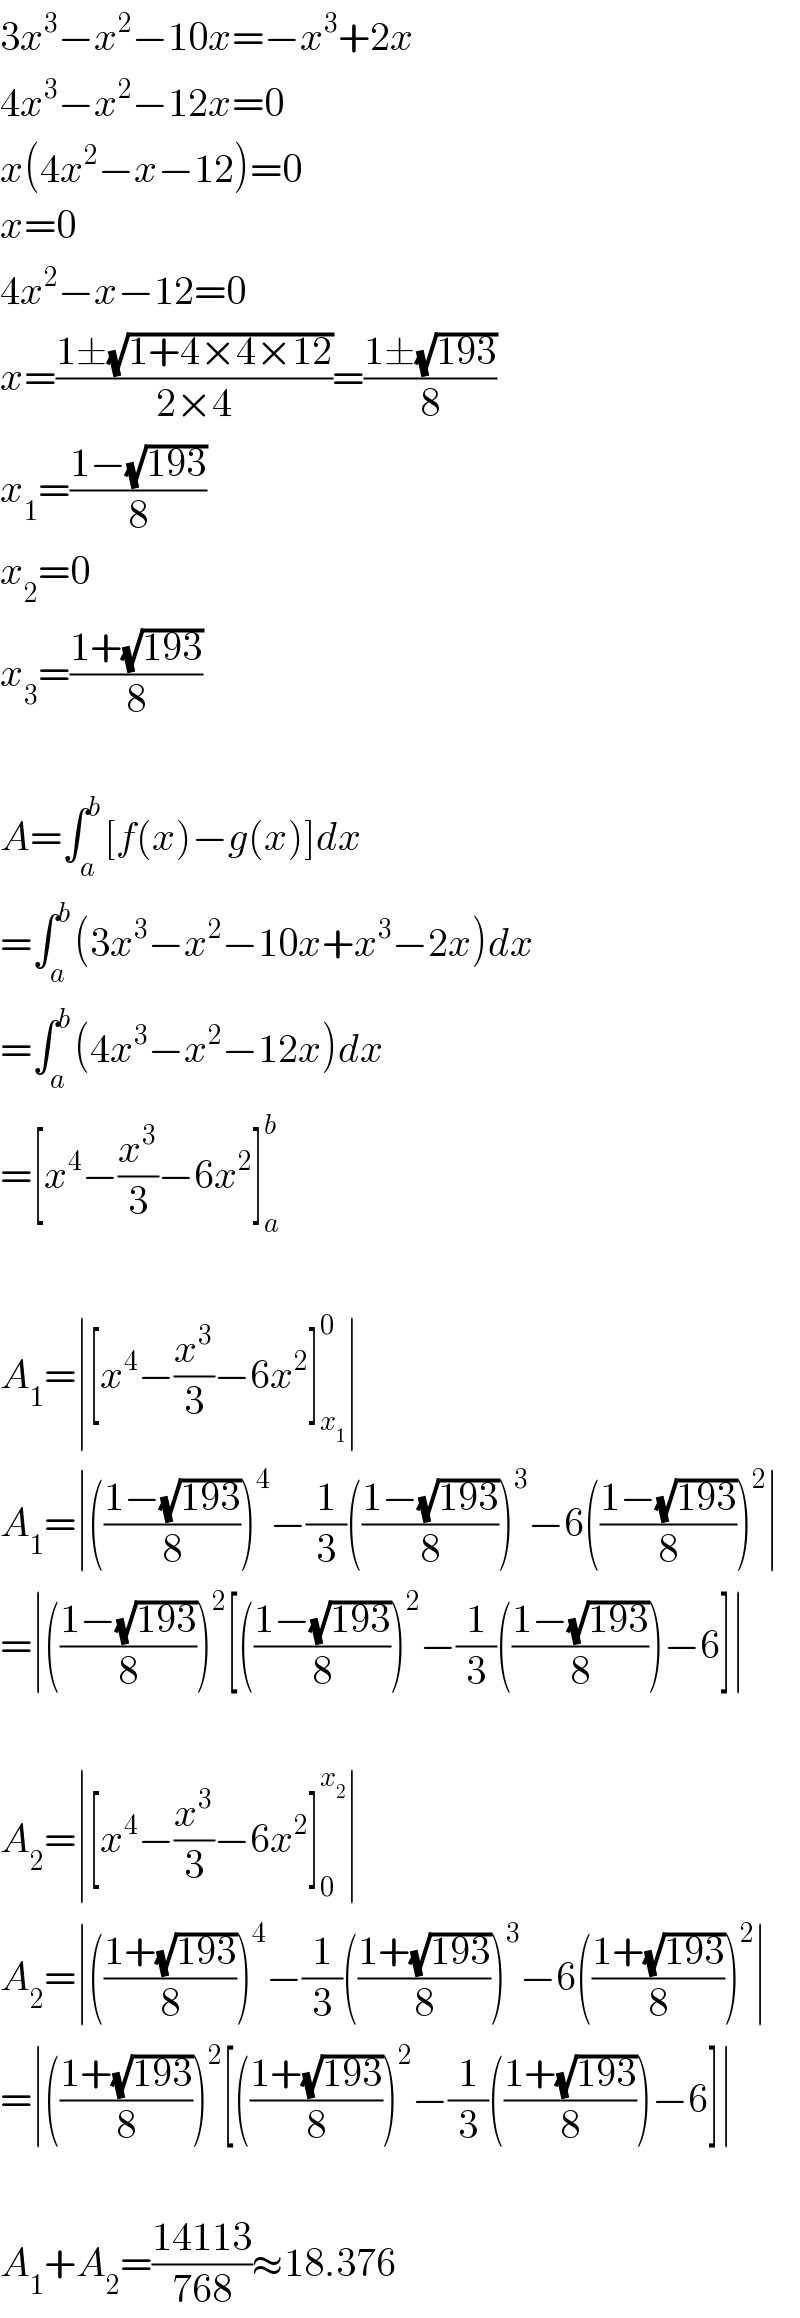 3x^3 −x^2 −10x=−x^3 +2x  4x^3 −x^2 −12x=0  x(4x^2 −x−12)=0  x=0  4x^2 −x−12=0  x=((1±(√(1+4×4×12)))/(2×4))=((1±(√(193)))/8)  x_1 =((1−(√(193)))/8)  x_2 =0  x_3 =((1+(√(193)))/8)    A=∫_a ^b [f(x)−g(x)]dx  =∫_a ^b (3x^3 −x^2 −10x+x^3 −2x)dx  =∫_a ^b (4x^3 −x^2 −12x)dx  =[x^4 −(x^3 /3)−6x^2 ]_a ^b     A_1 =∣[x^4 −(x^3 /3)−6x^2 ]_x_1  ^0 ∣  A_1 =∣(((1−(√(193)))/8))^4 −(1/3)(((1−(√(193)))/8))^3 −6(((1−(√(193)))/8))^2 ∣  =∣(((1−(√(193)))/8))^2 [(((1−(√(193)))/8))^2 −(1/3)(((1−(√(193)))/8))−6]∣    A_2 =∣[x^4 −(x^3 /3)−6x^2 ]_0 ^x_2  ∣  A_2 =∣(((1+(√(193)))/8))^4 −(1/3)(((1+(√(193)))/8))^3 −6(((1+(√(193)))/8))^2 ∣  =∣(((1+(√(193)))/8))^2 [(((1+(√(193)))/8))^2 −(1/3)(((1+(√(193)))/8))−6]∣    A_1 +A_2 =((14113)/(768))≈18.376  